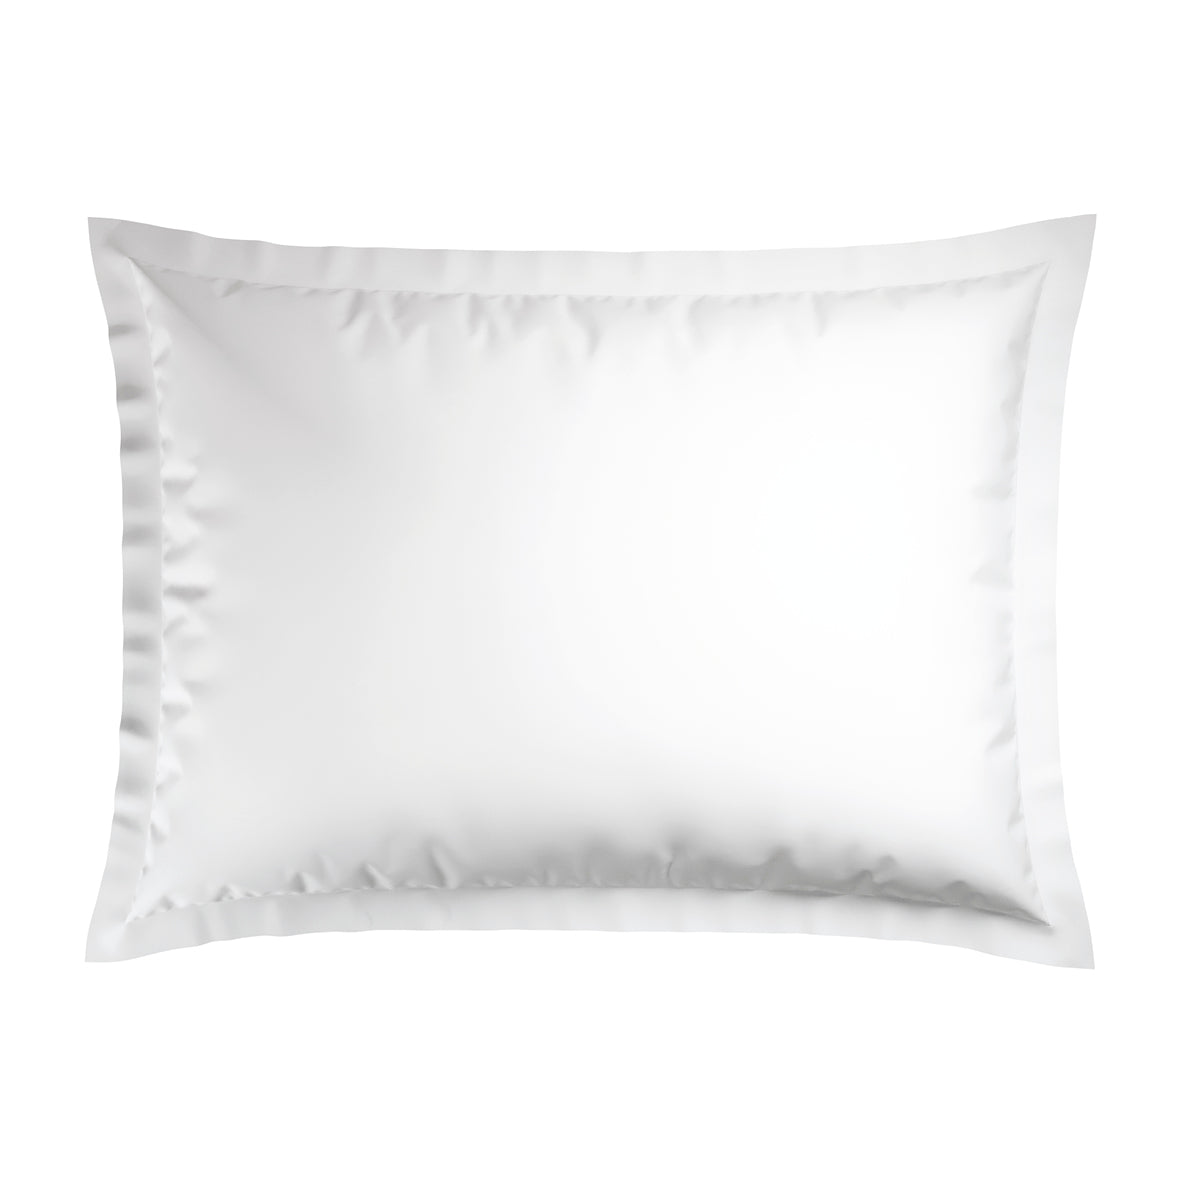 Pillowcase(s) cotton satin - Paris White / Taupe